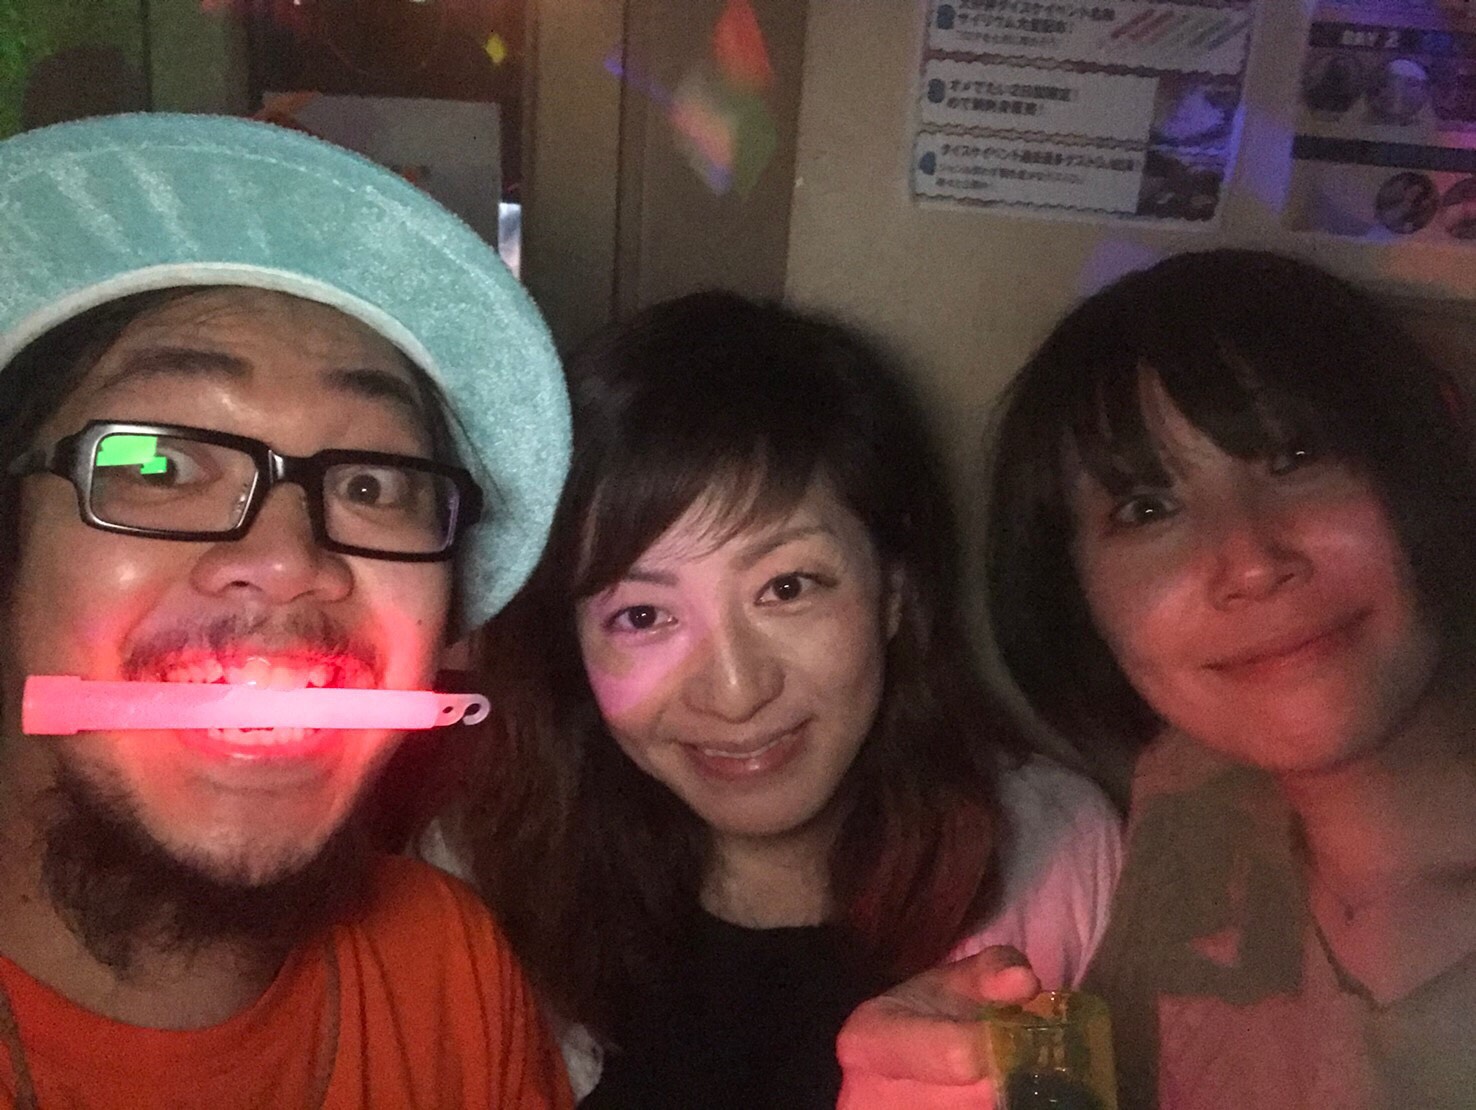 https://bar-rockaholic.jp/shibuya/blog/S__9814028.jpg